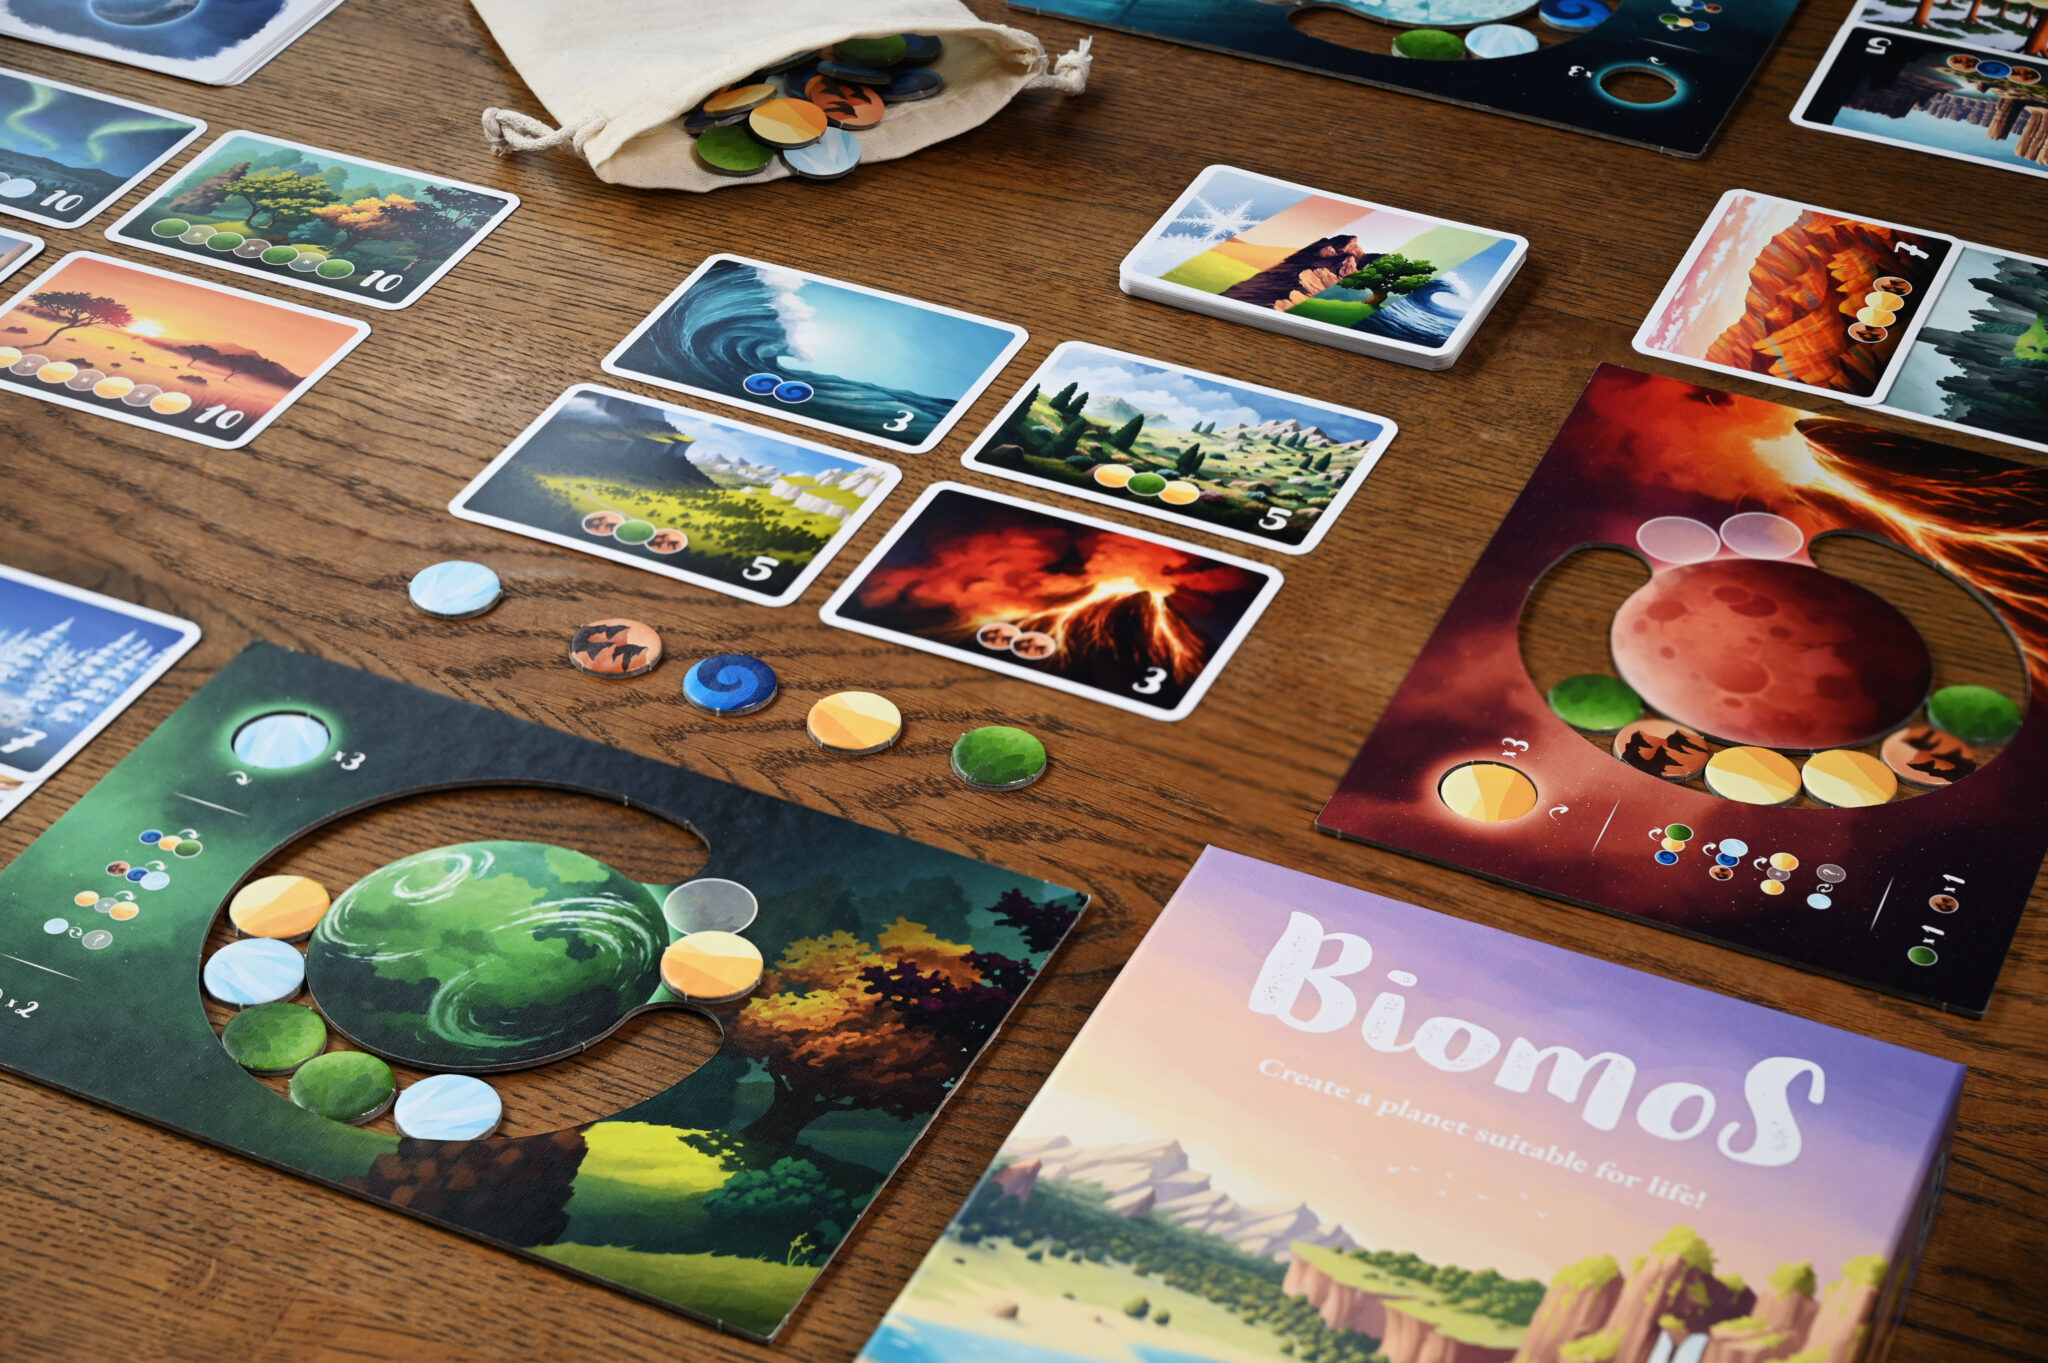 Biomos game contents